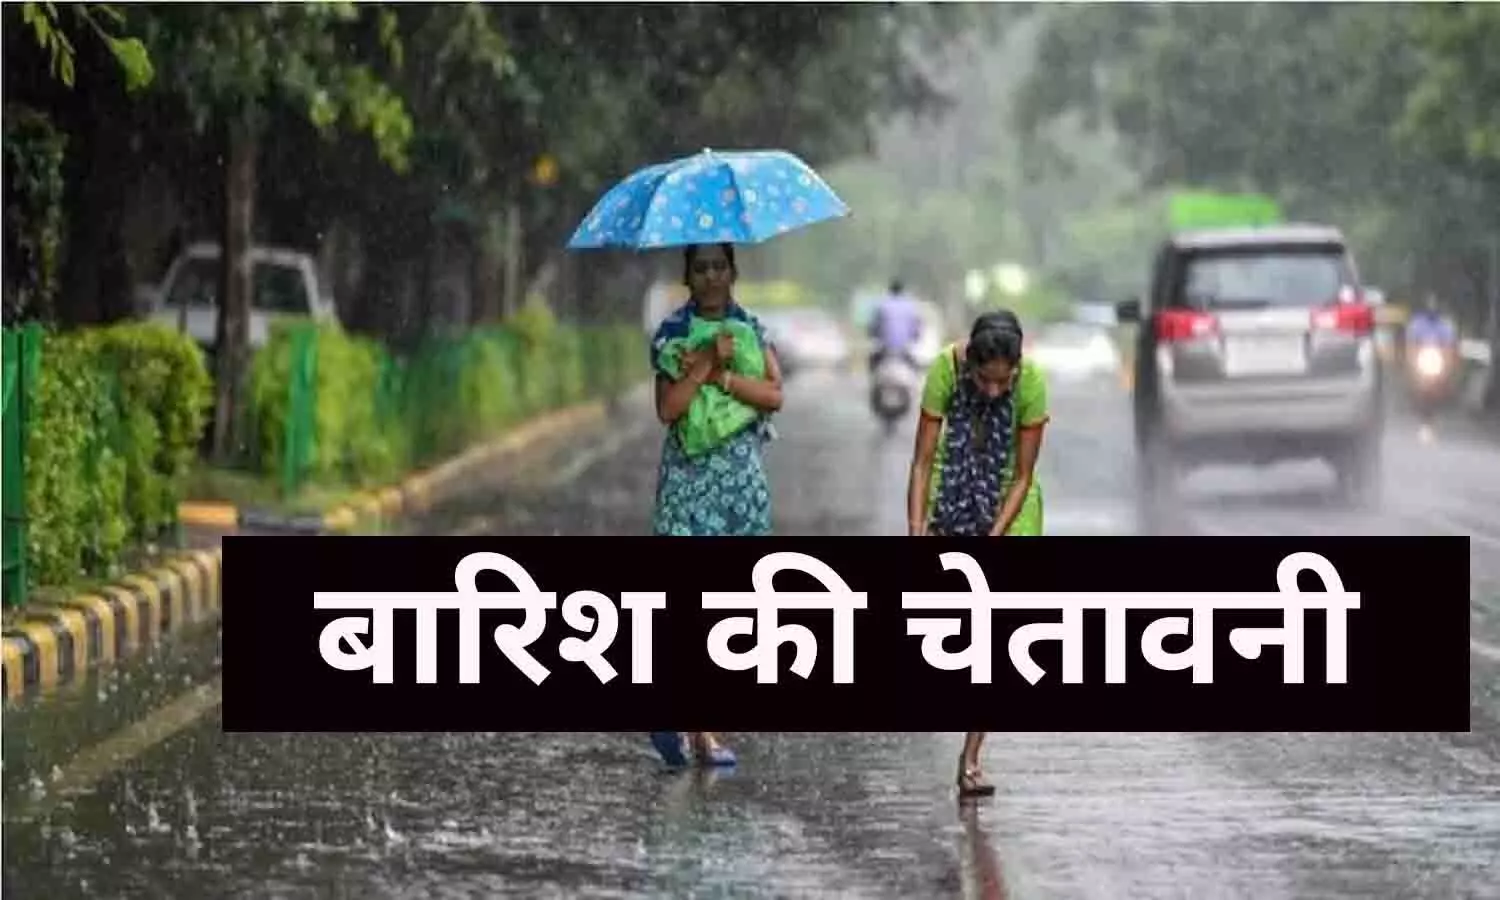 Weather Today Update: चलेगी आंधी-होगा वज्रपात, MP, UP और CG, Punjab-Haryana समेत इन राज्यों में बारिश का अलर्ट, बर्फबारी की भी भविष्यवाणी